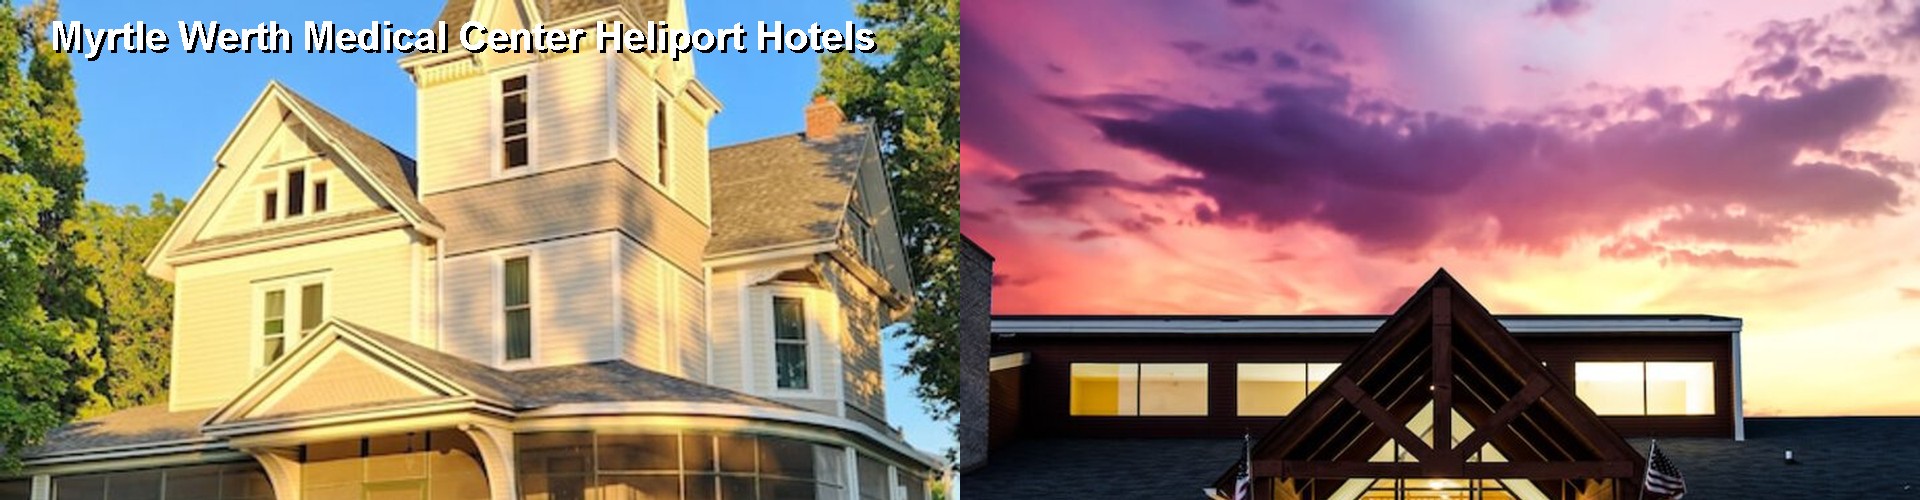 3 Best Hotels near Myrtle Werth Medical Center Heliport